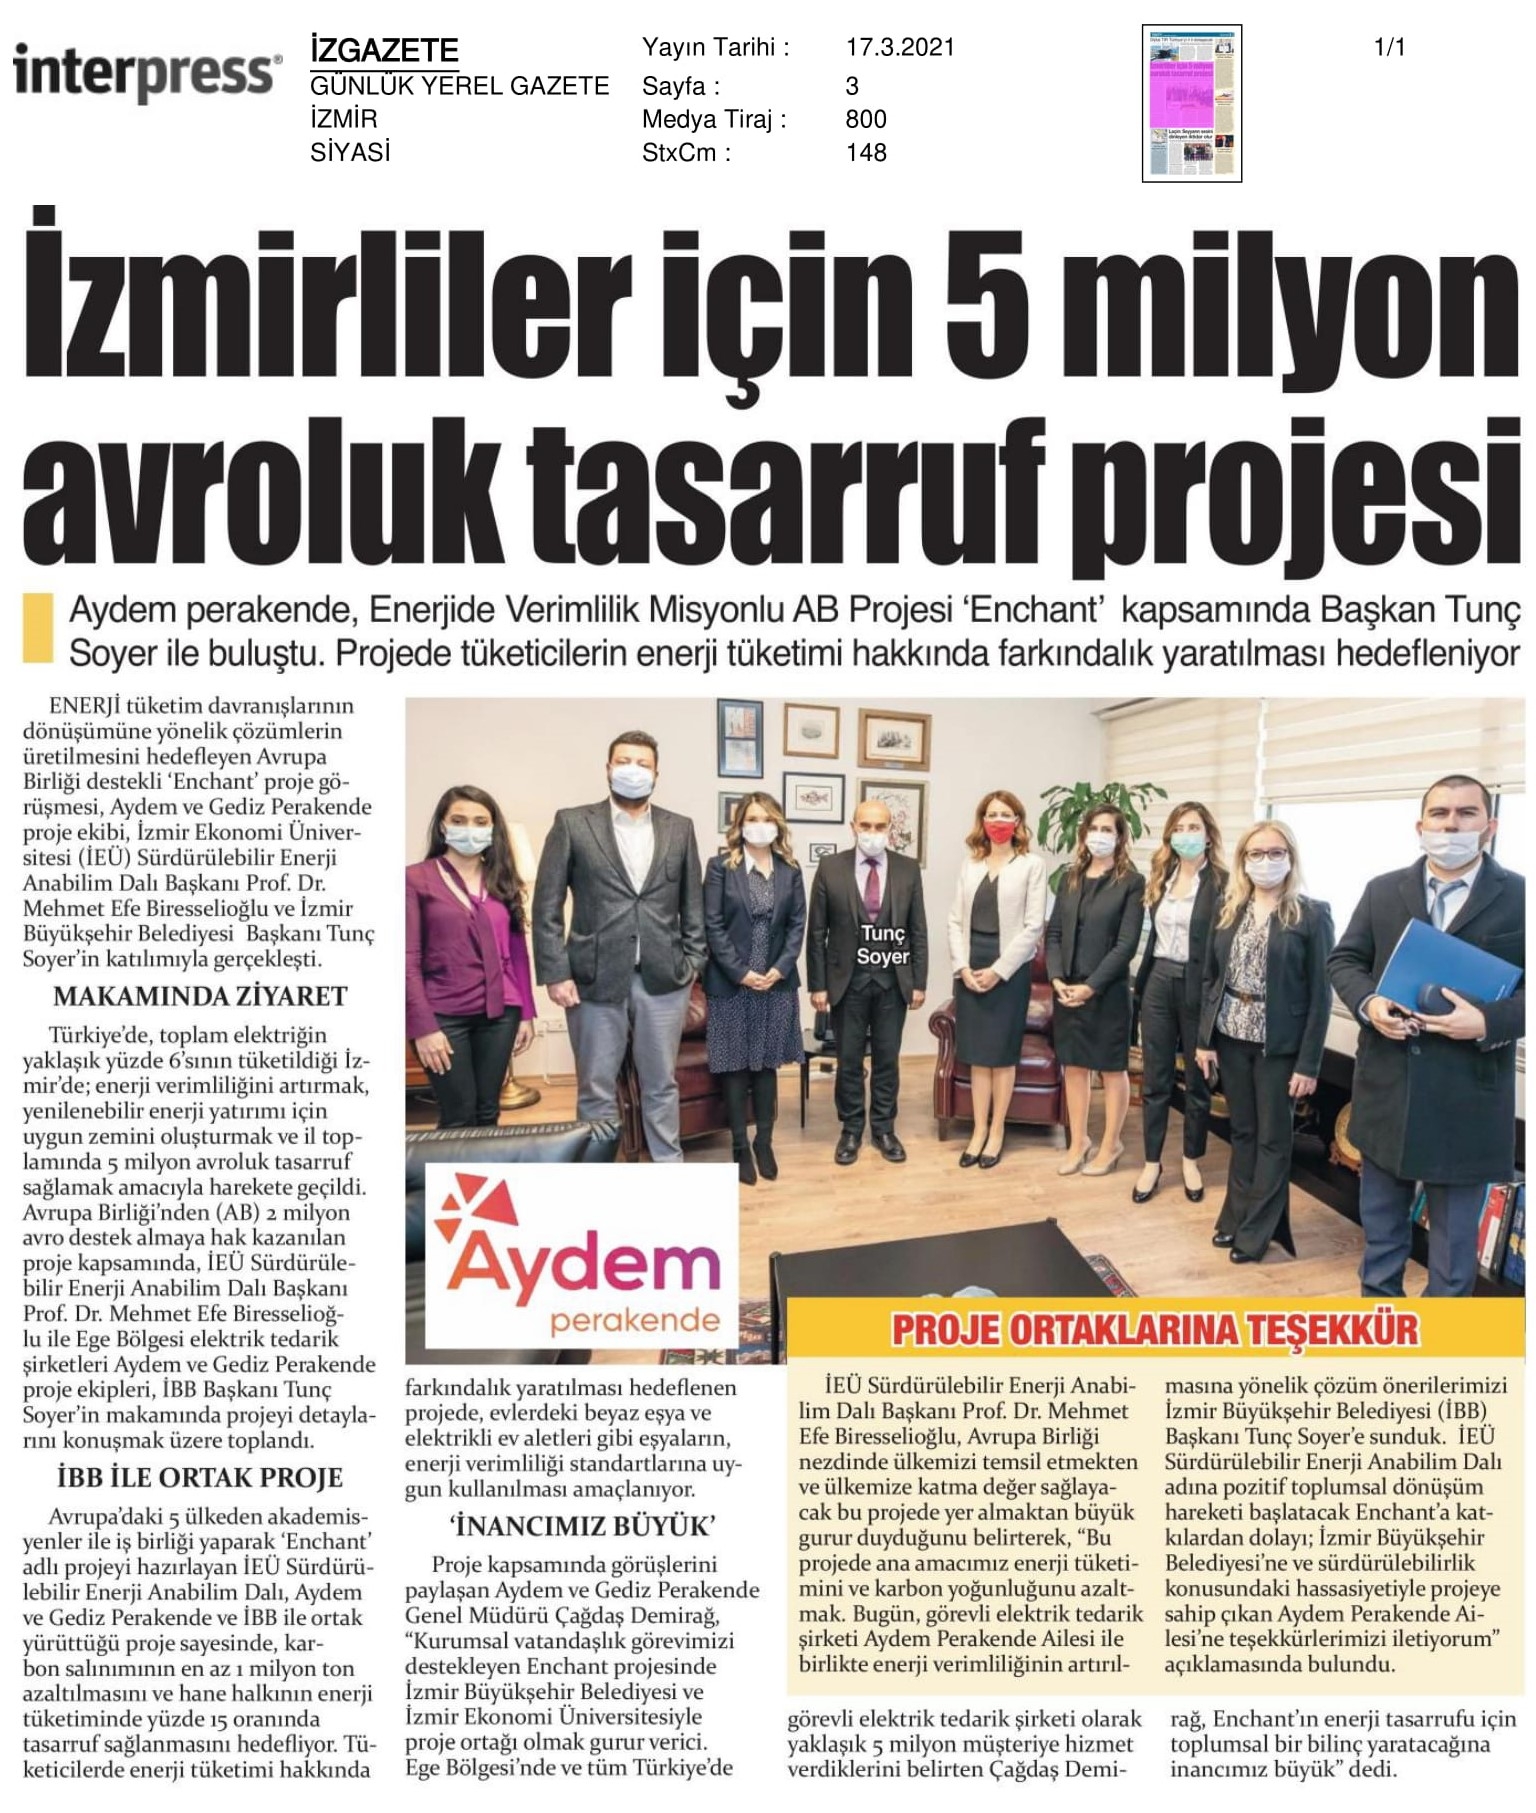 İzmir'de '44 milyon liralık' tasarruf projesi